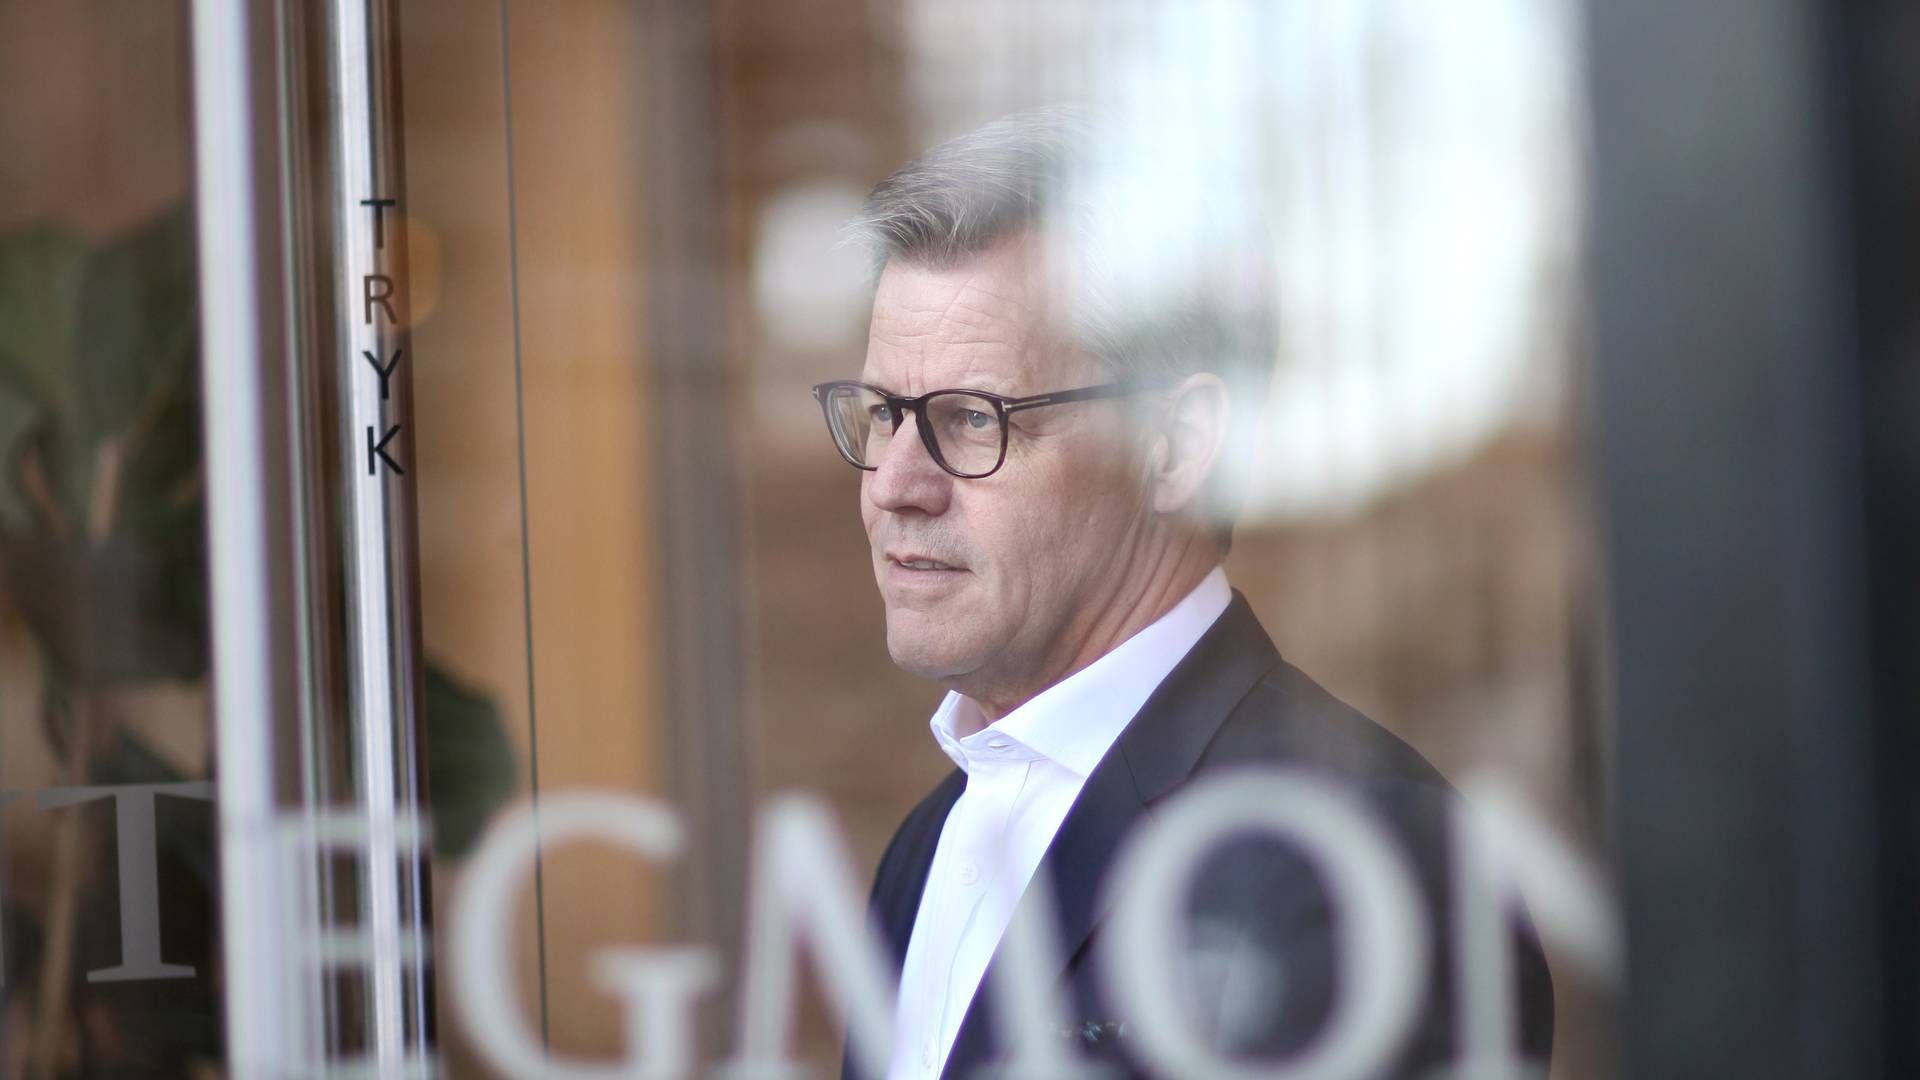 Egmonts adm. direktør Steffen Kragh fortæller, at det har kostet omkring 50 mio. kr. på bundlinjen at droppe salg til Rusland. | Foto: Nicolai Lorenzen/egmont